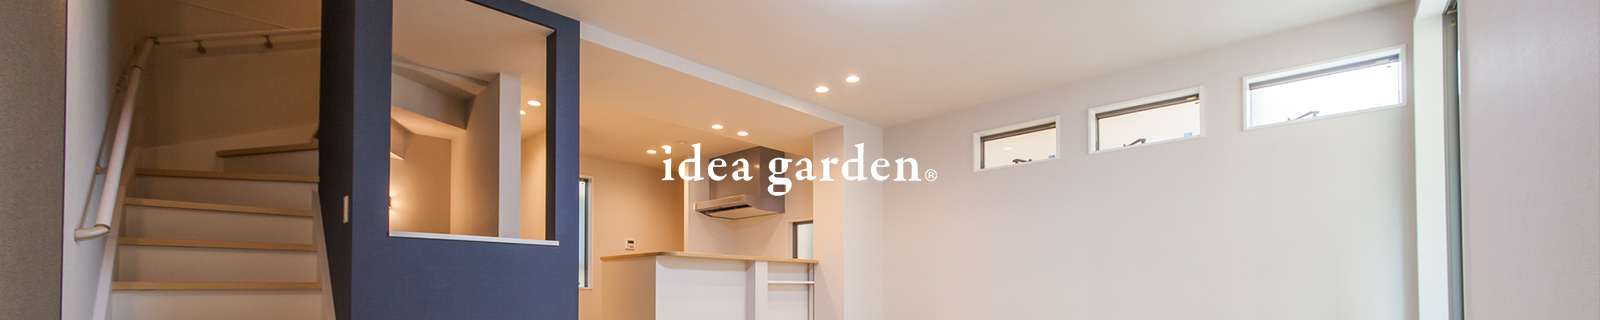 その場所に相応しい分譲住宅のカタチ【idea garden イデアガーデン】